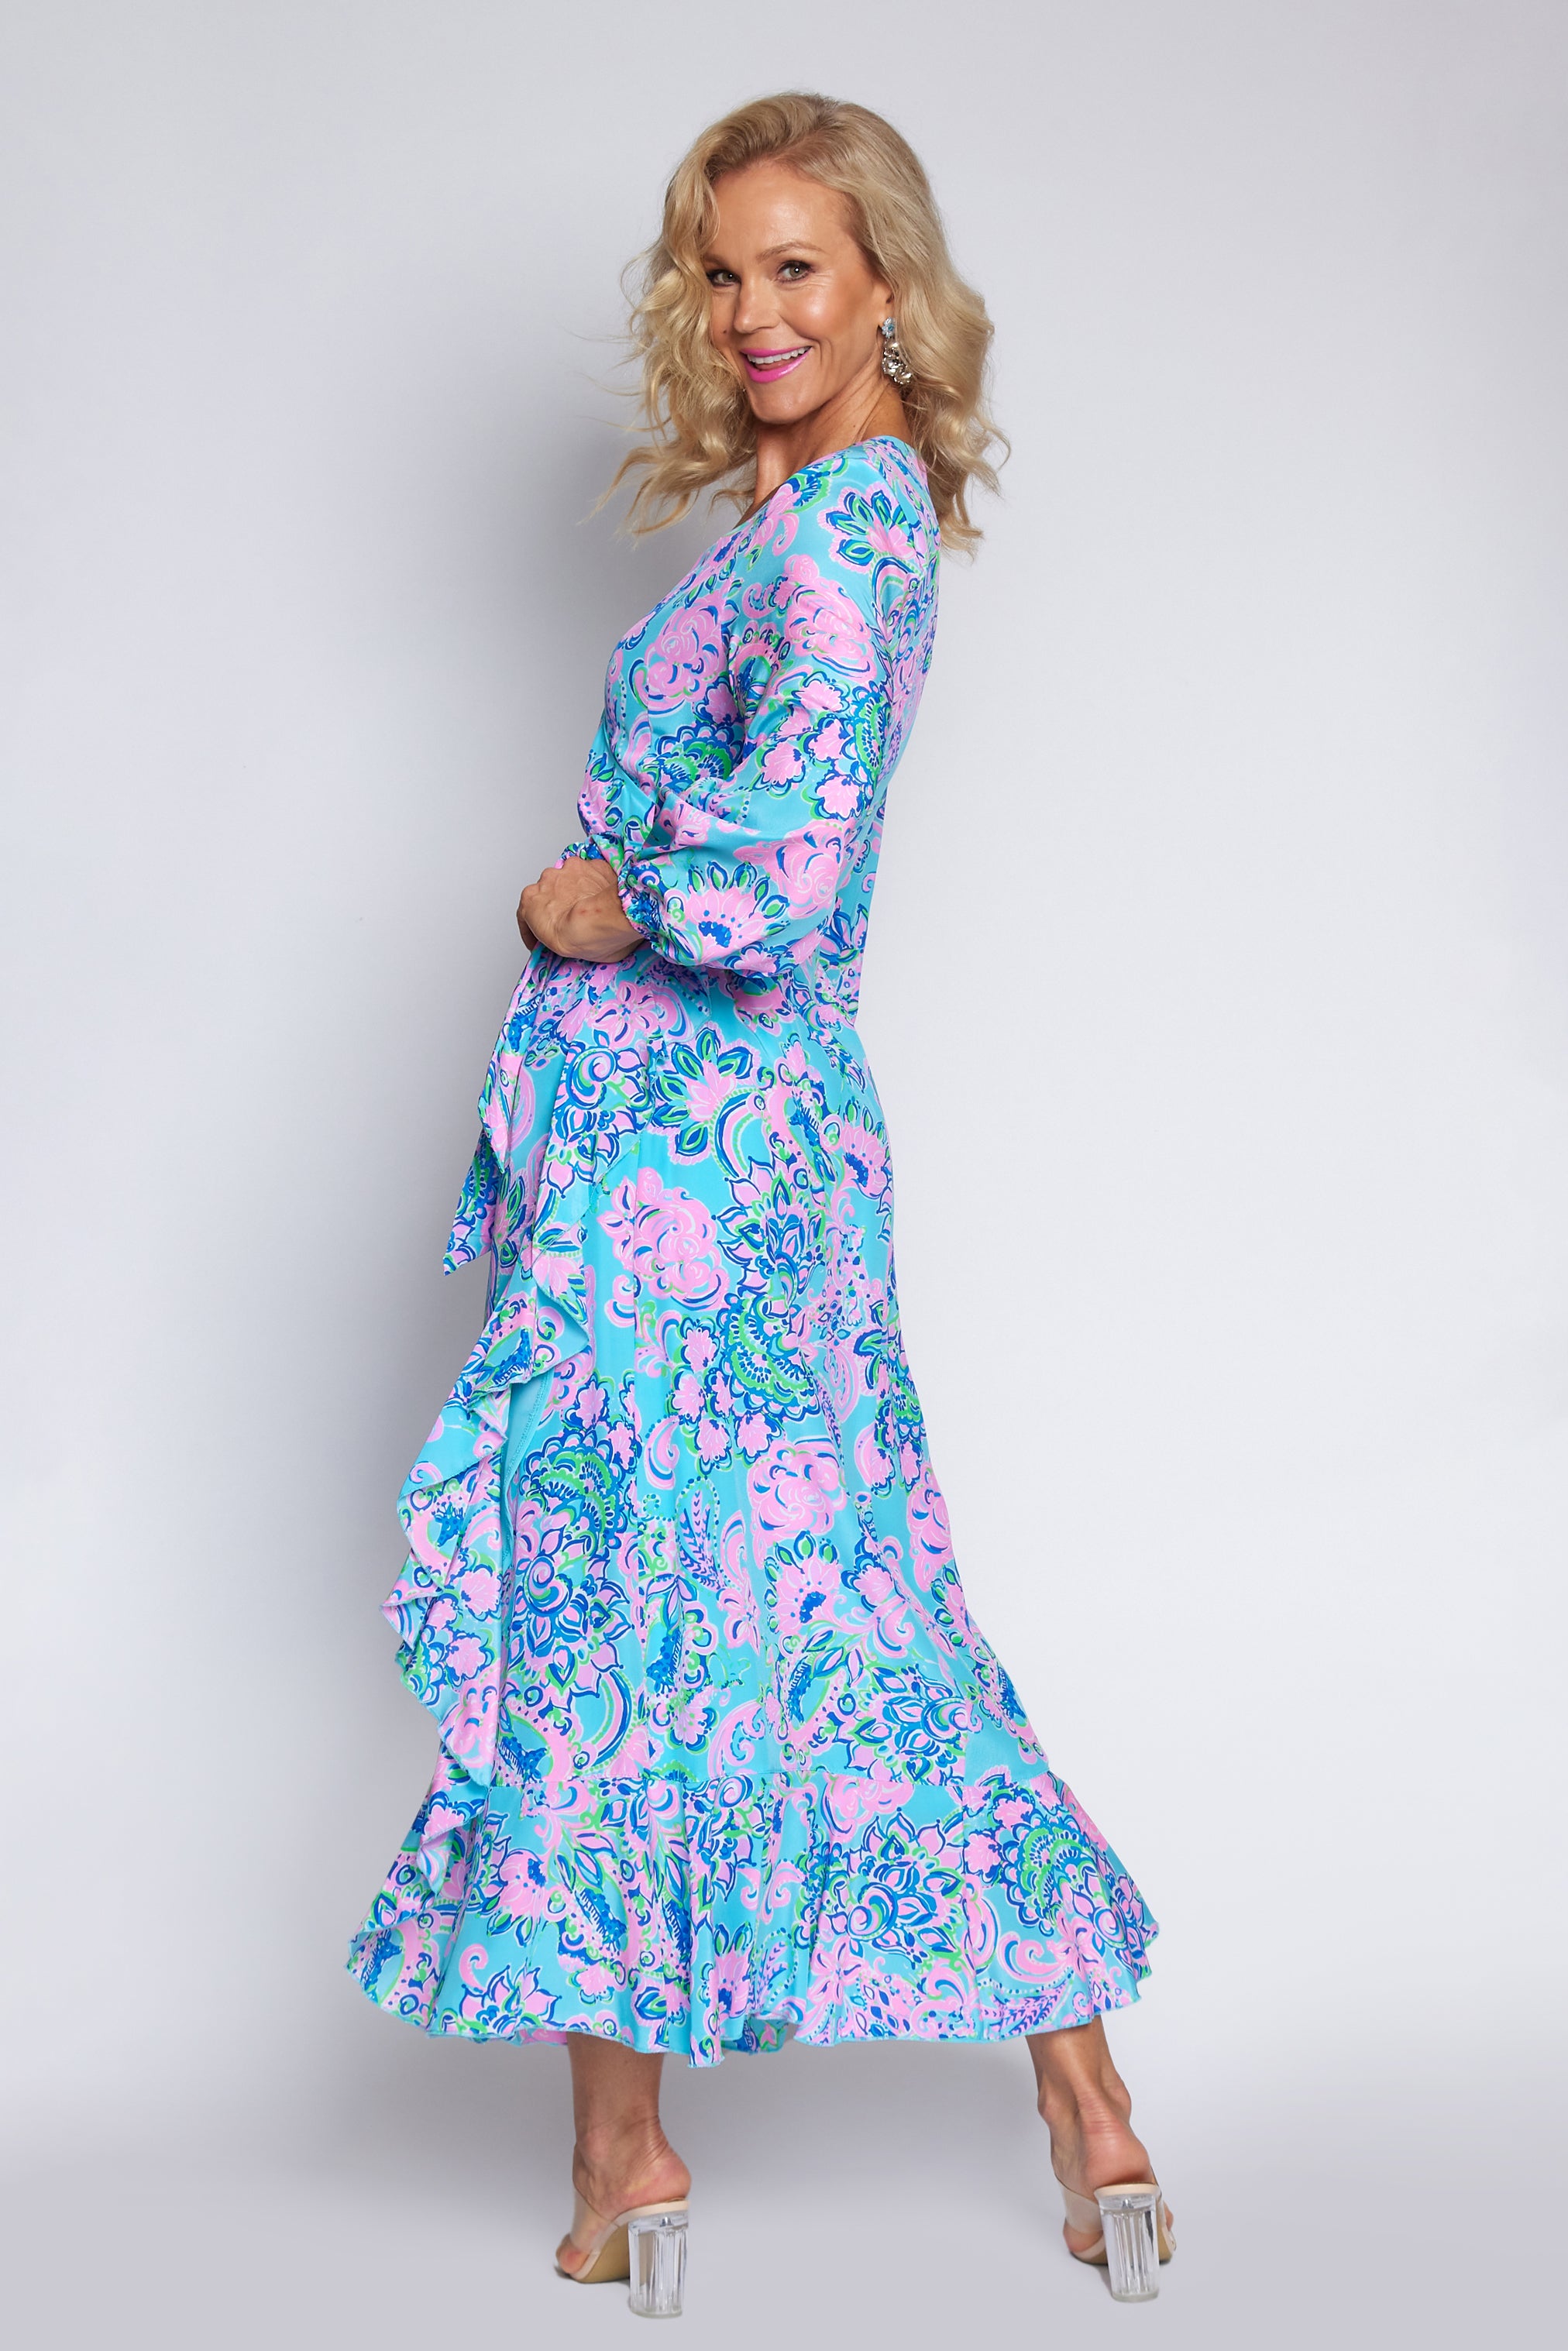 Amalfi Blue and Pink Wrap dress (Long)